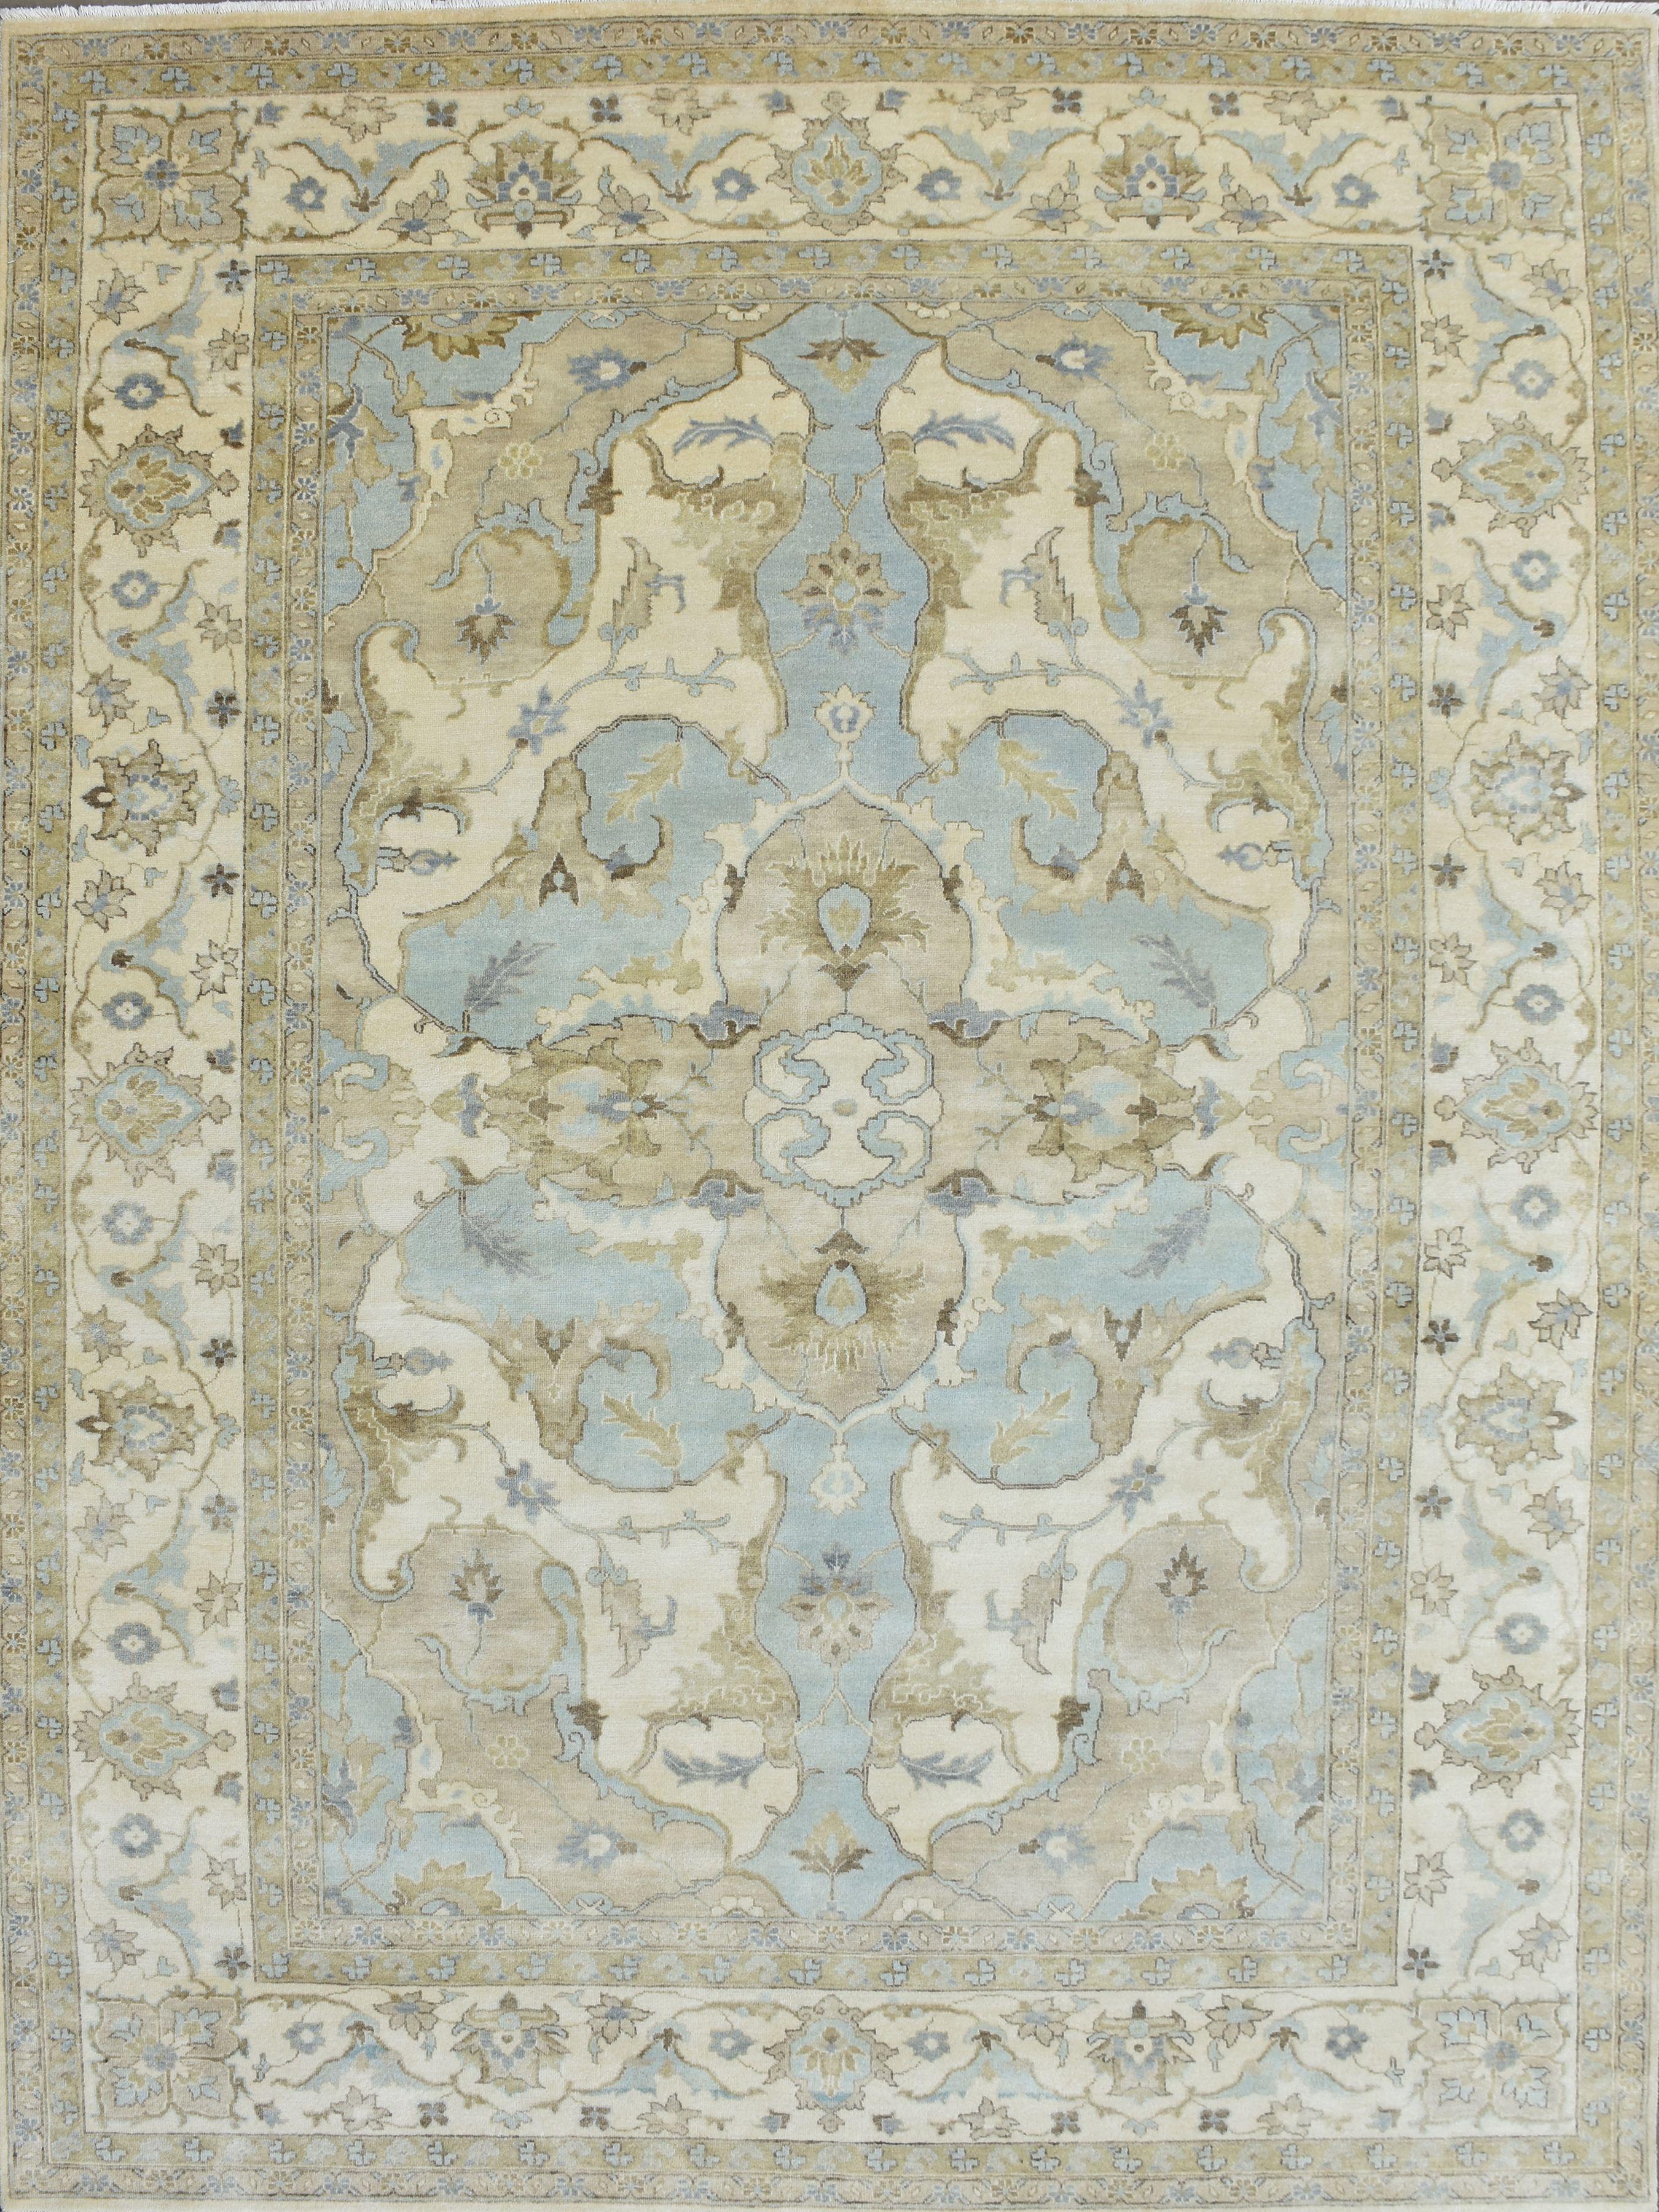 Joli tapis neuf avec un beau design Oushak et de belles couleurs, entièrement noué à la main avec du velours de laine sur une base de coton.